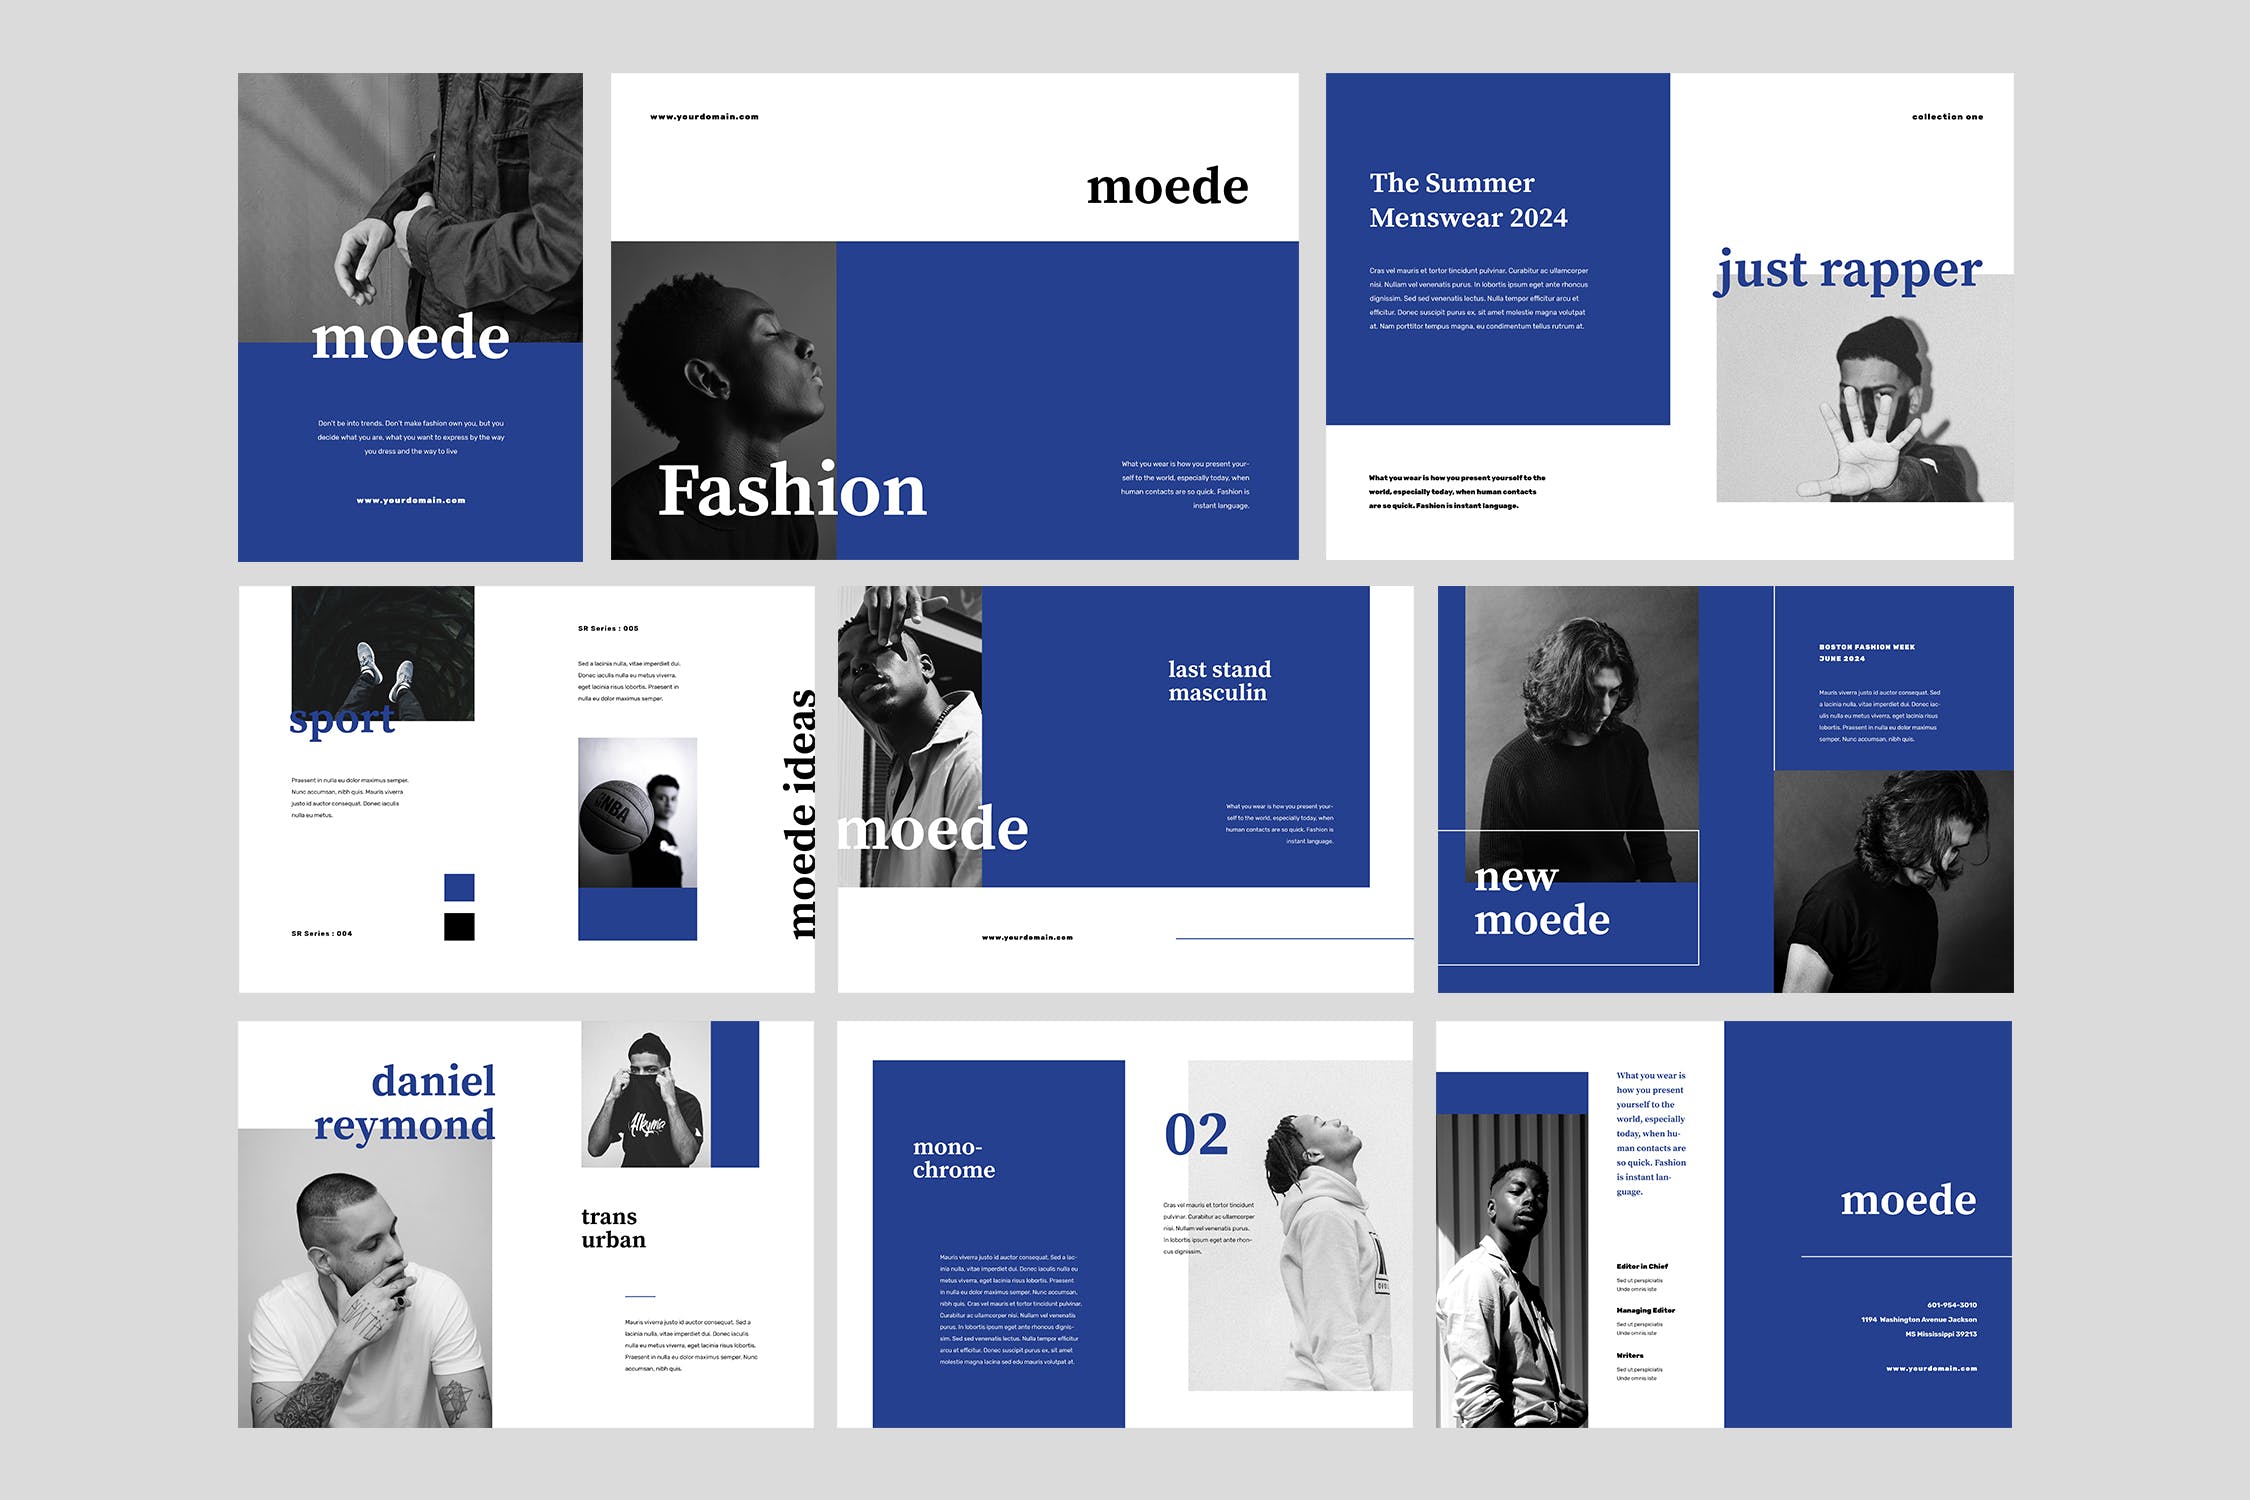 高端时尚服装品牌产品非凡图库精选目录设计模板 Moede Fashion Lookbook Catalogue插图(4)